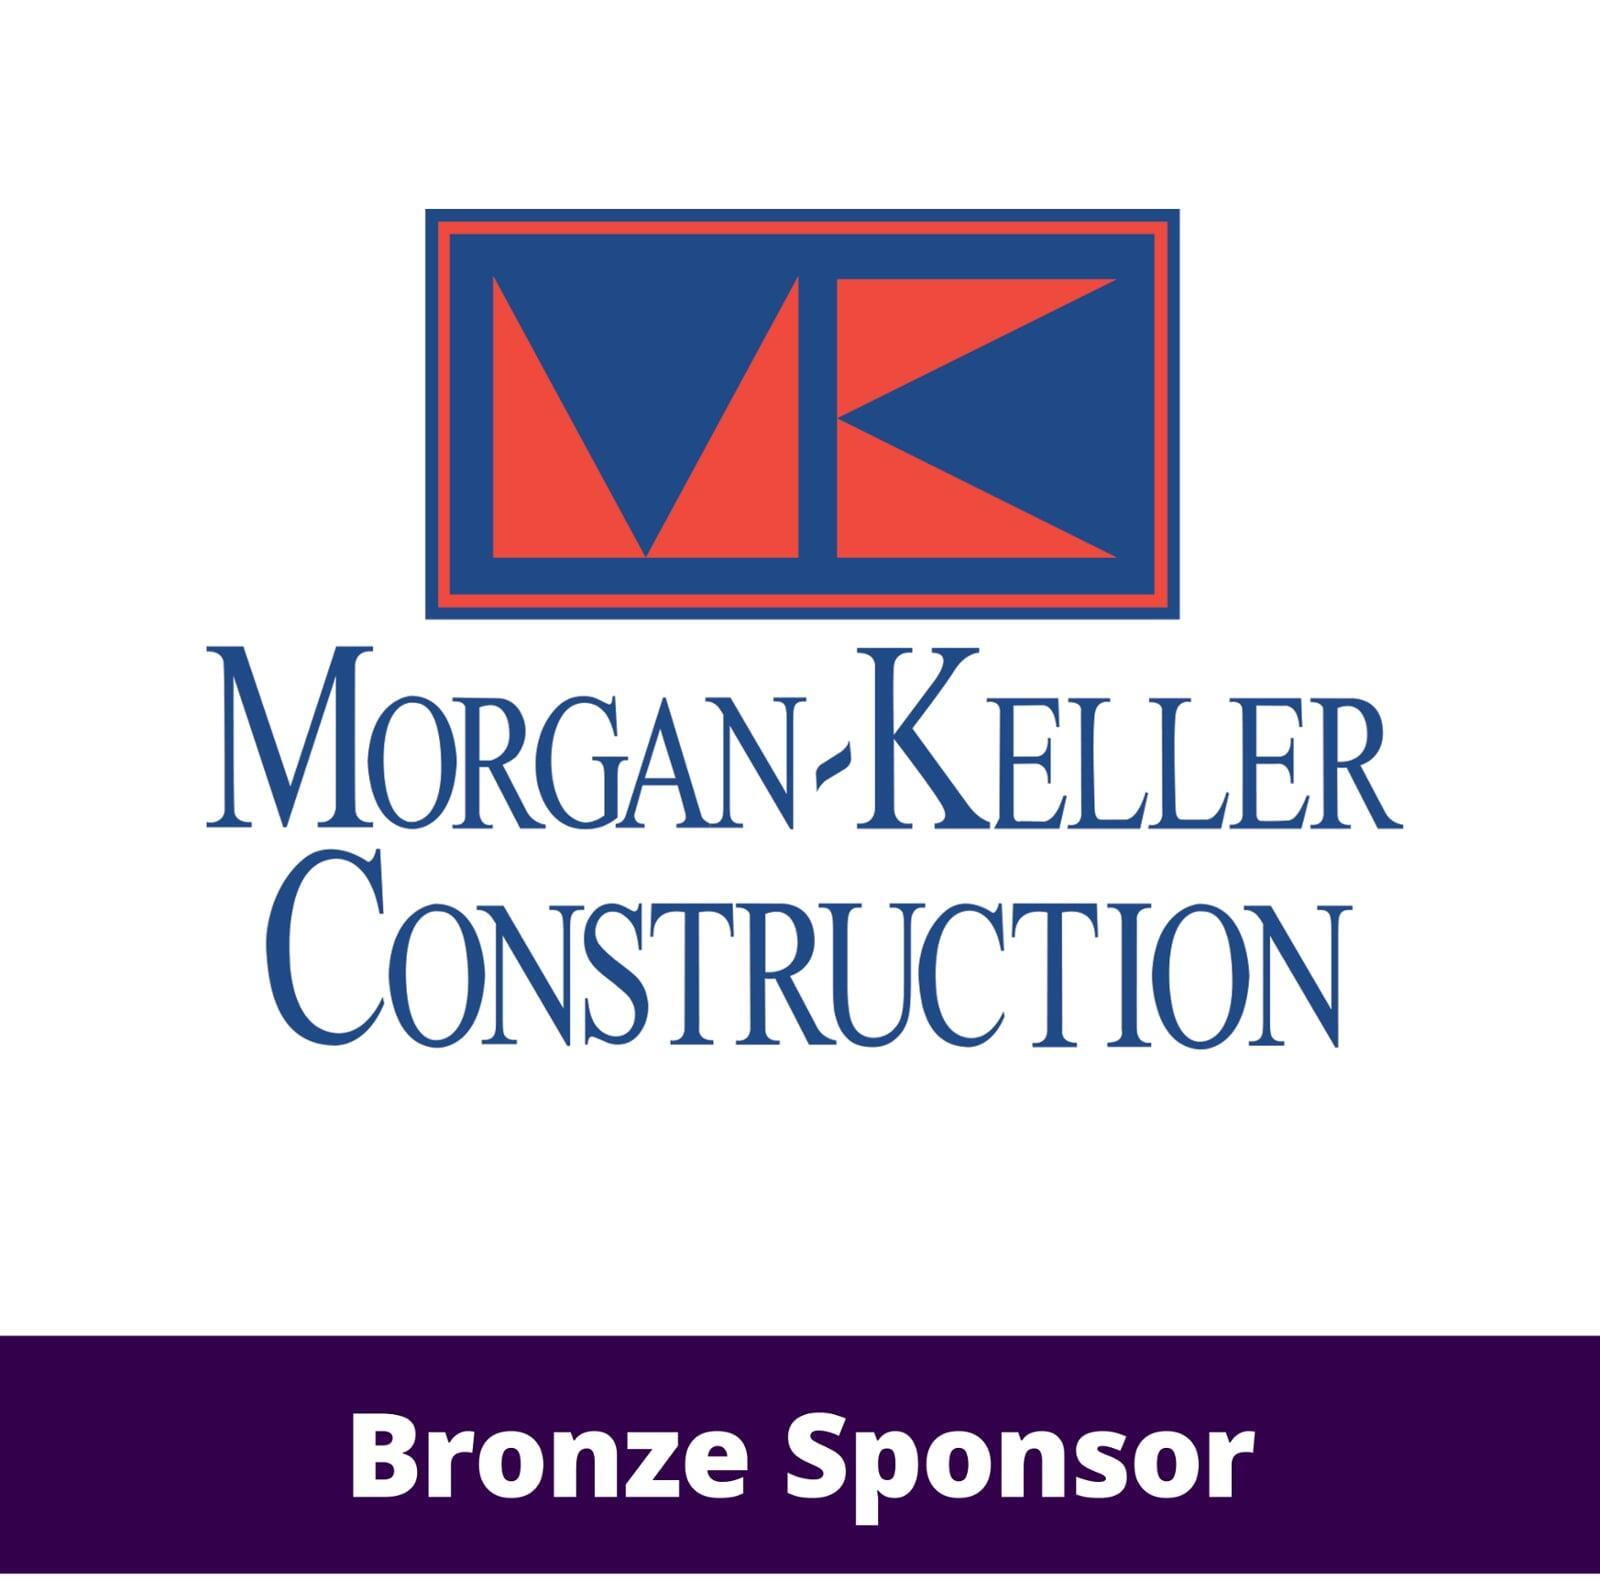 Morgan-Keller Construction logo